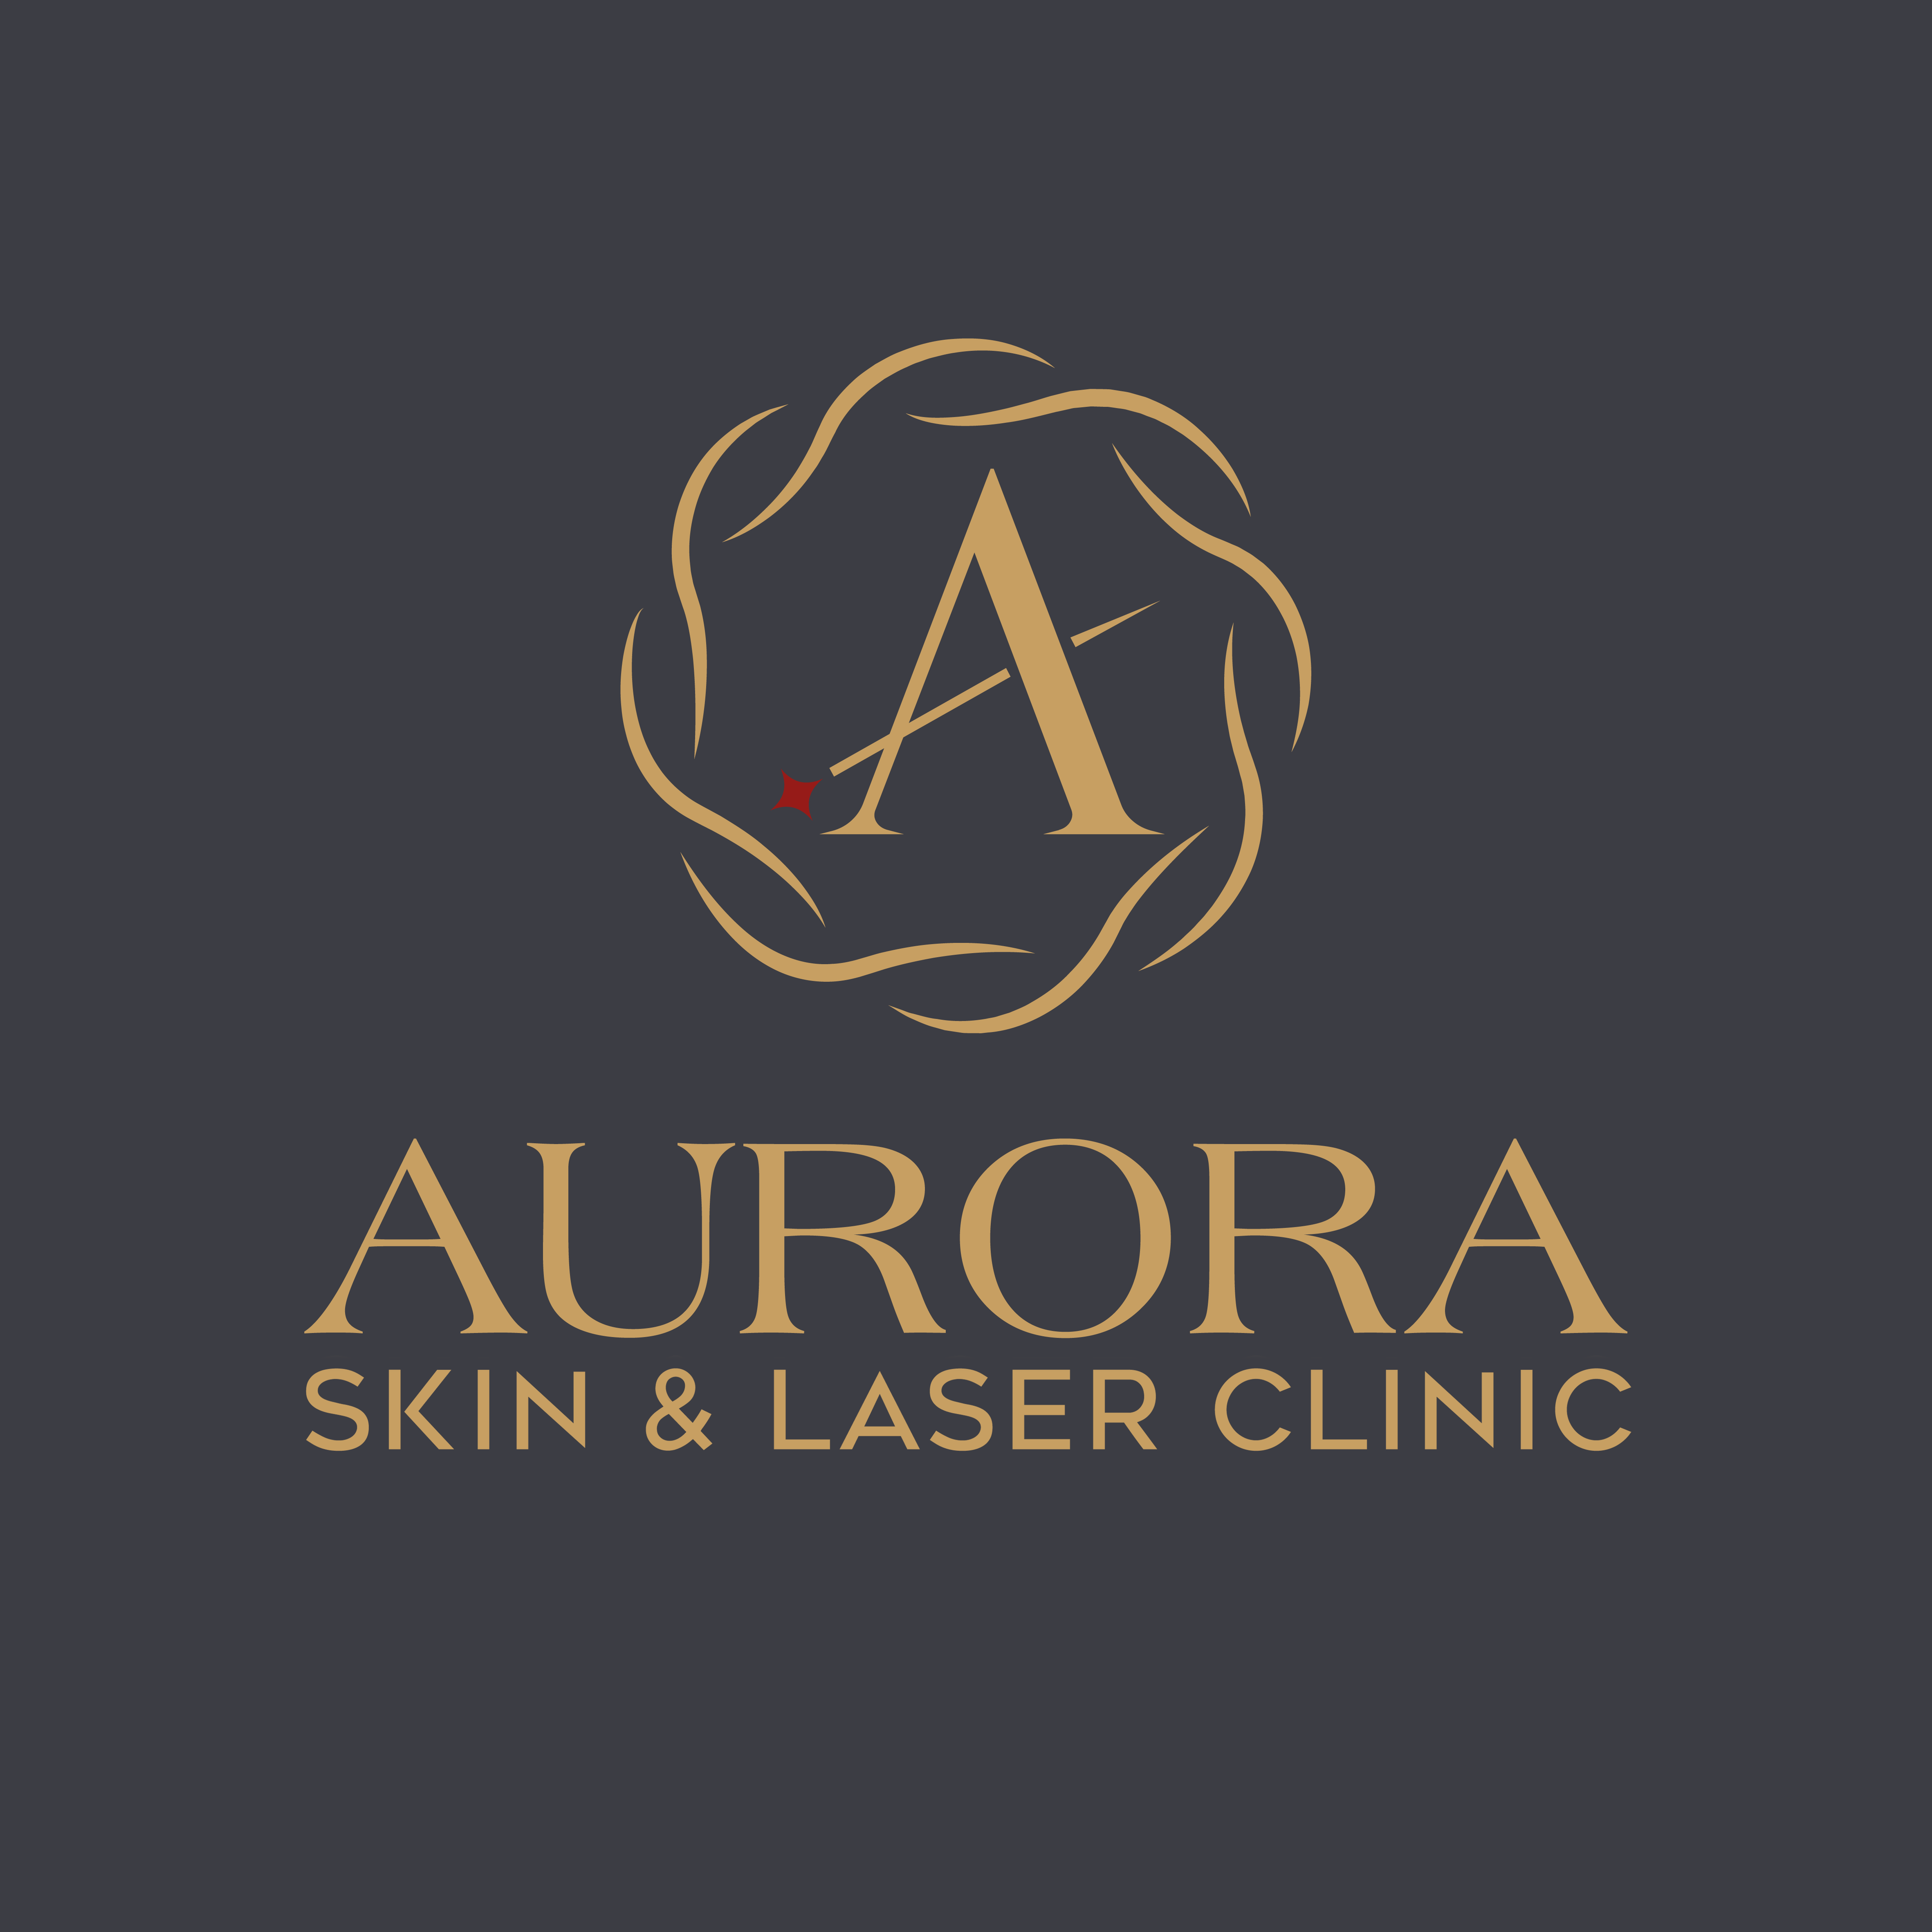 Aurora Skin & Laser Clinic